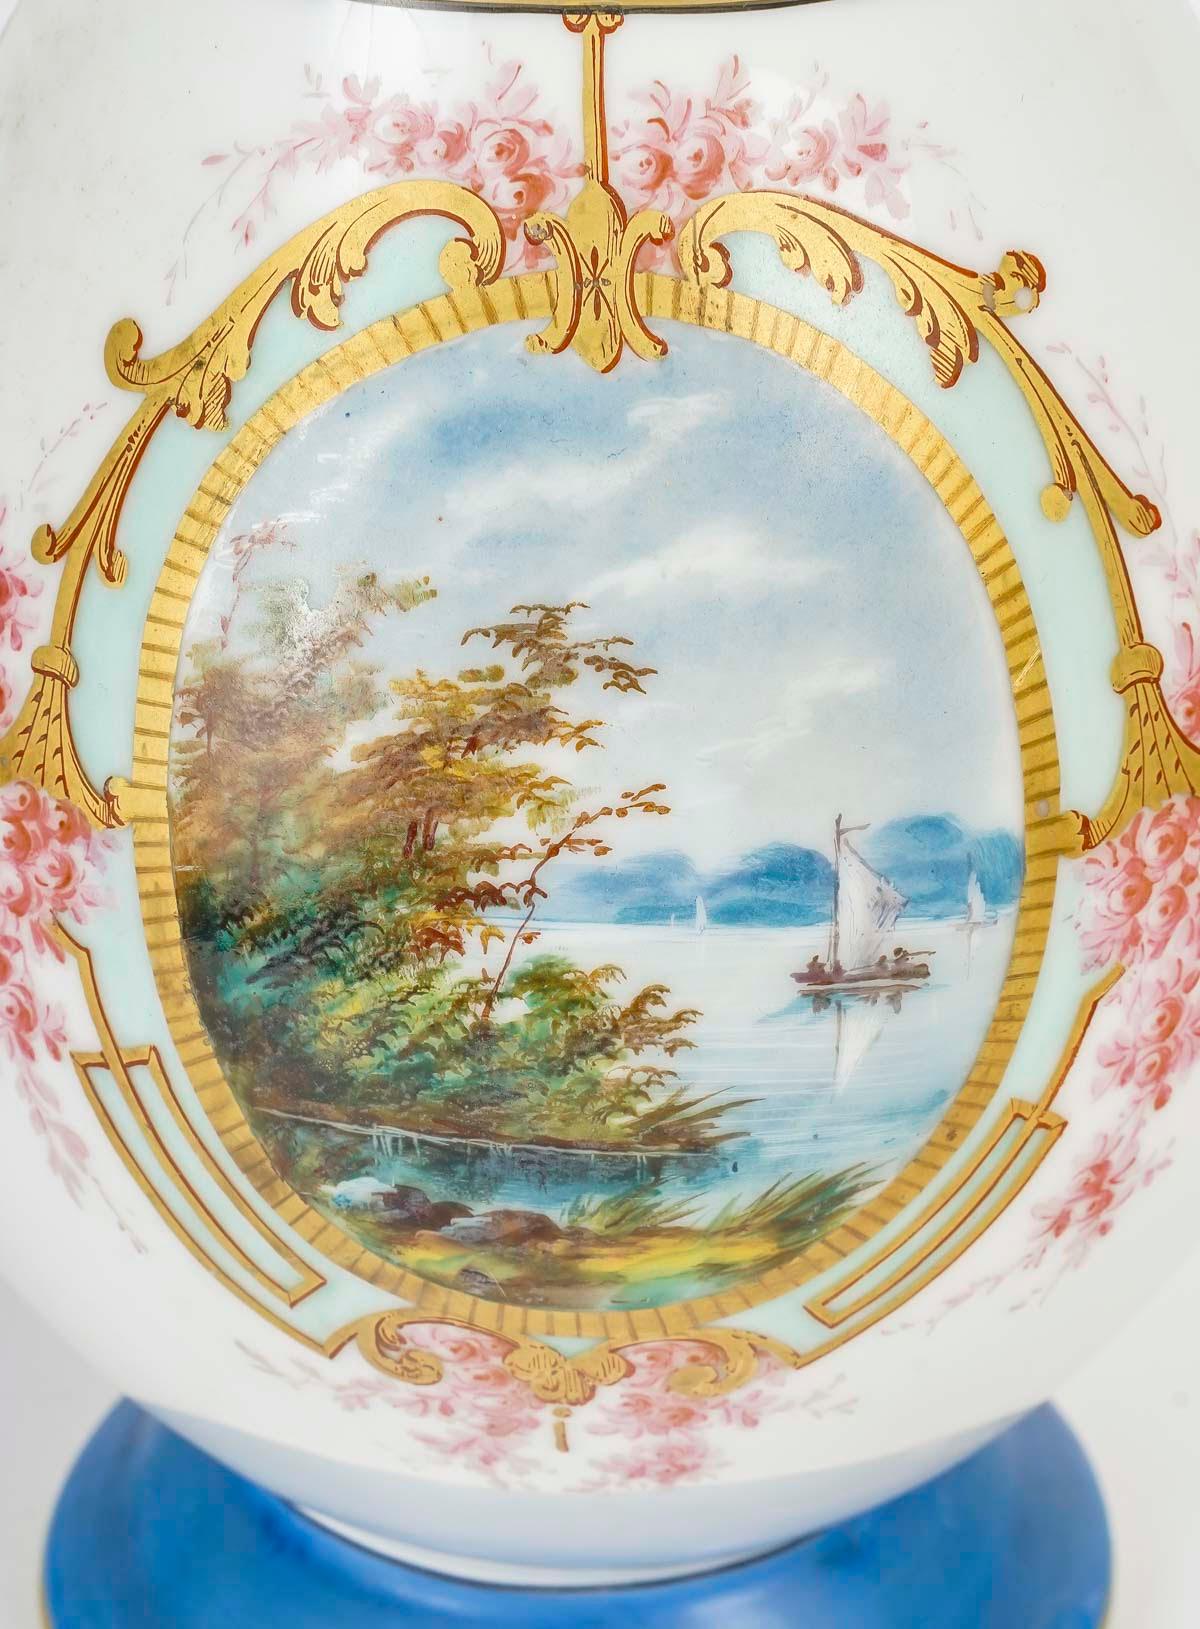 Großer Old Pariser Porzellan-Wasserkrug, 19. Jahrhundert.

Wasserkanne aus dem 19. Jahrhundert, Periode Karl X., aus altem Pariser Porzellan.
H: 35cm, B: 24cm, T: 15cm
